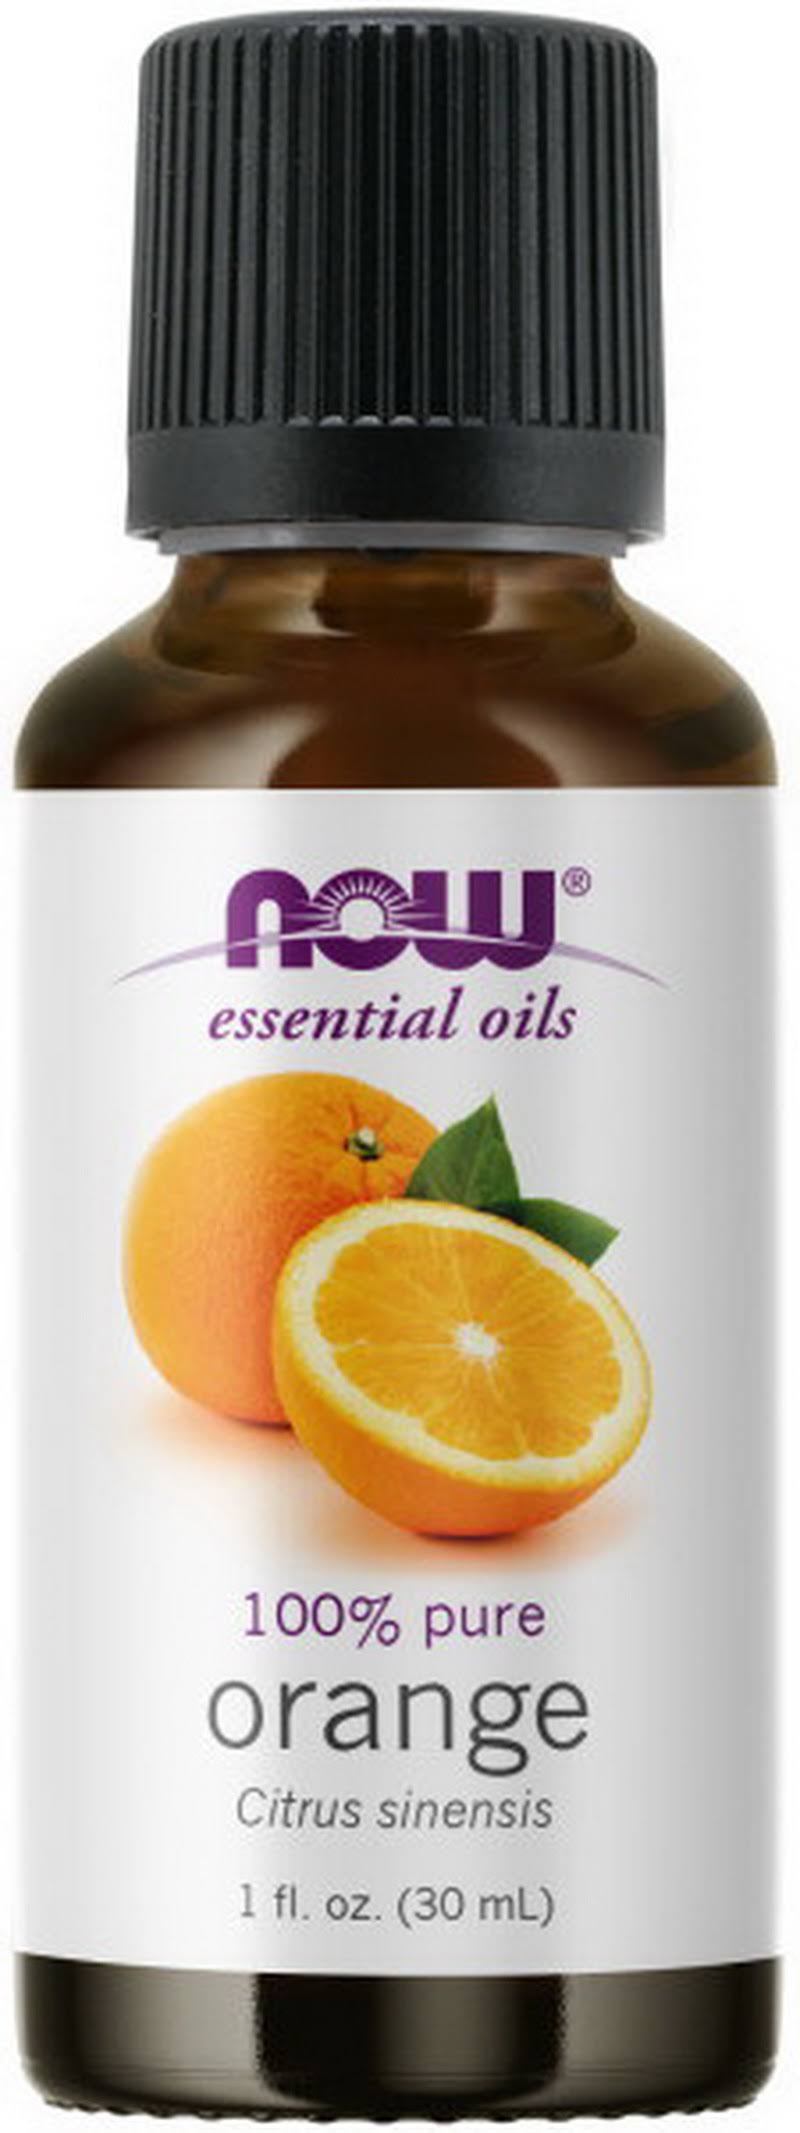 Now Essential Oils - Orange, 30ml